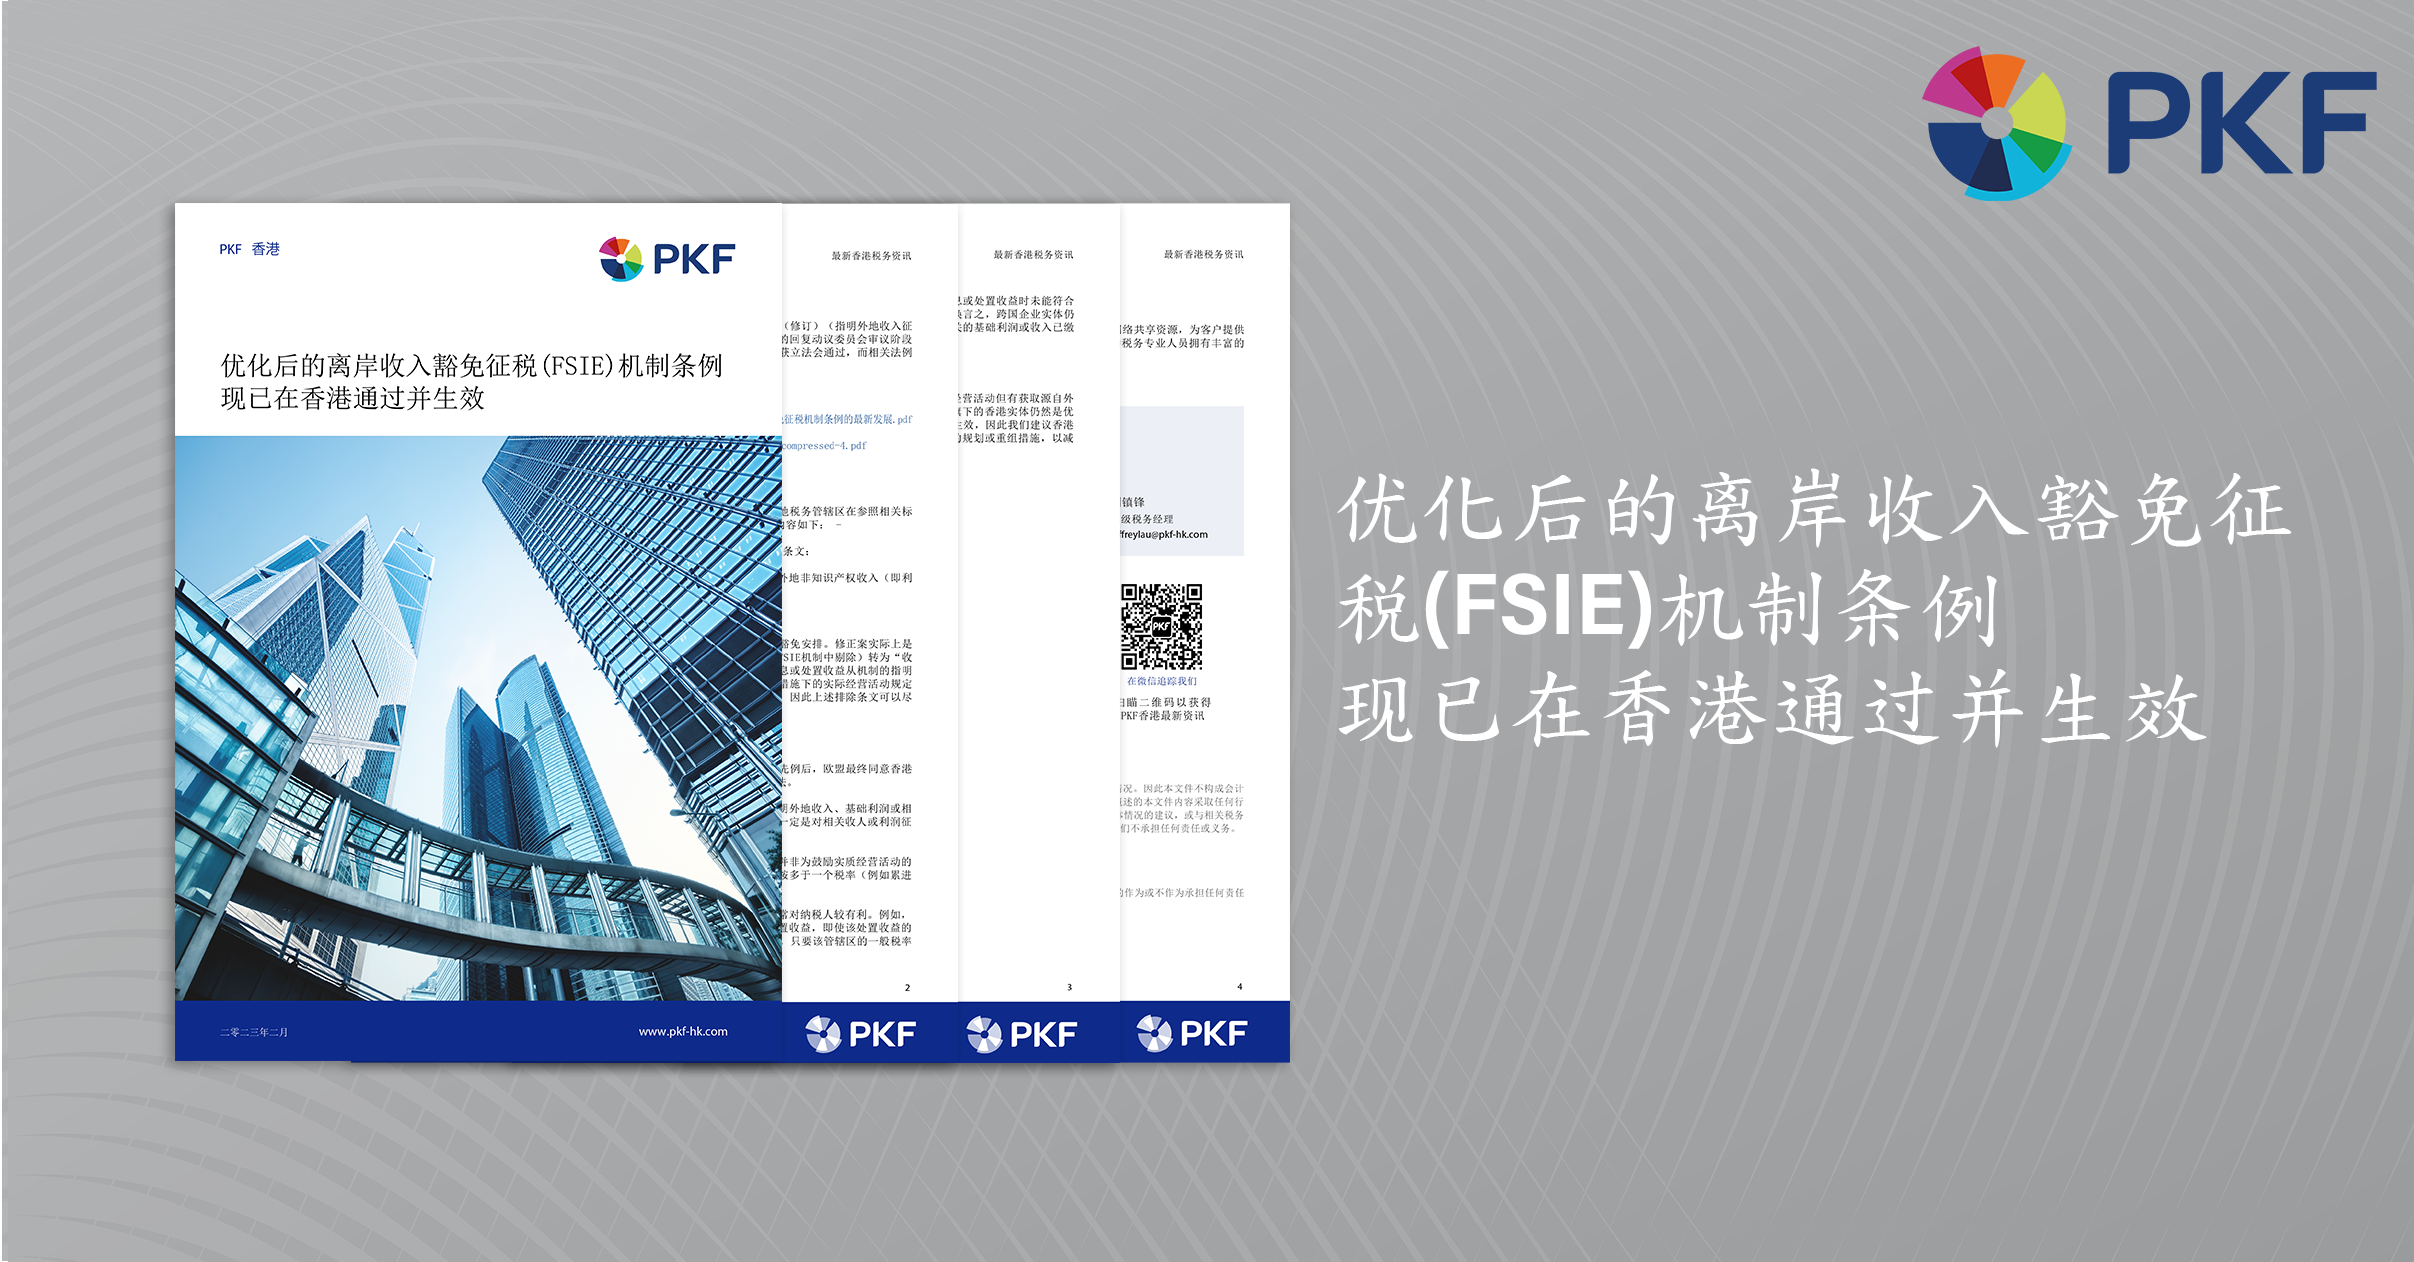 优化后的离岸收入豁免征税(FSIE)机制条例 现已在香港通过并生效